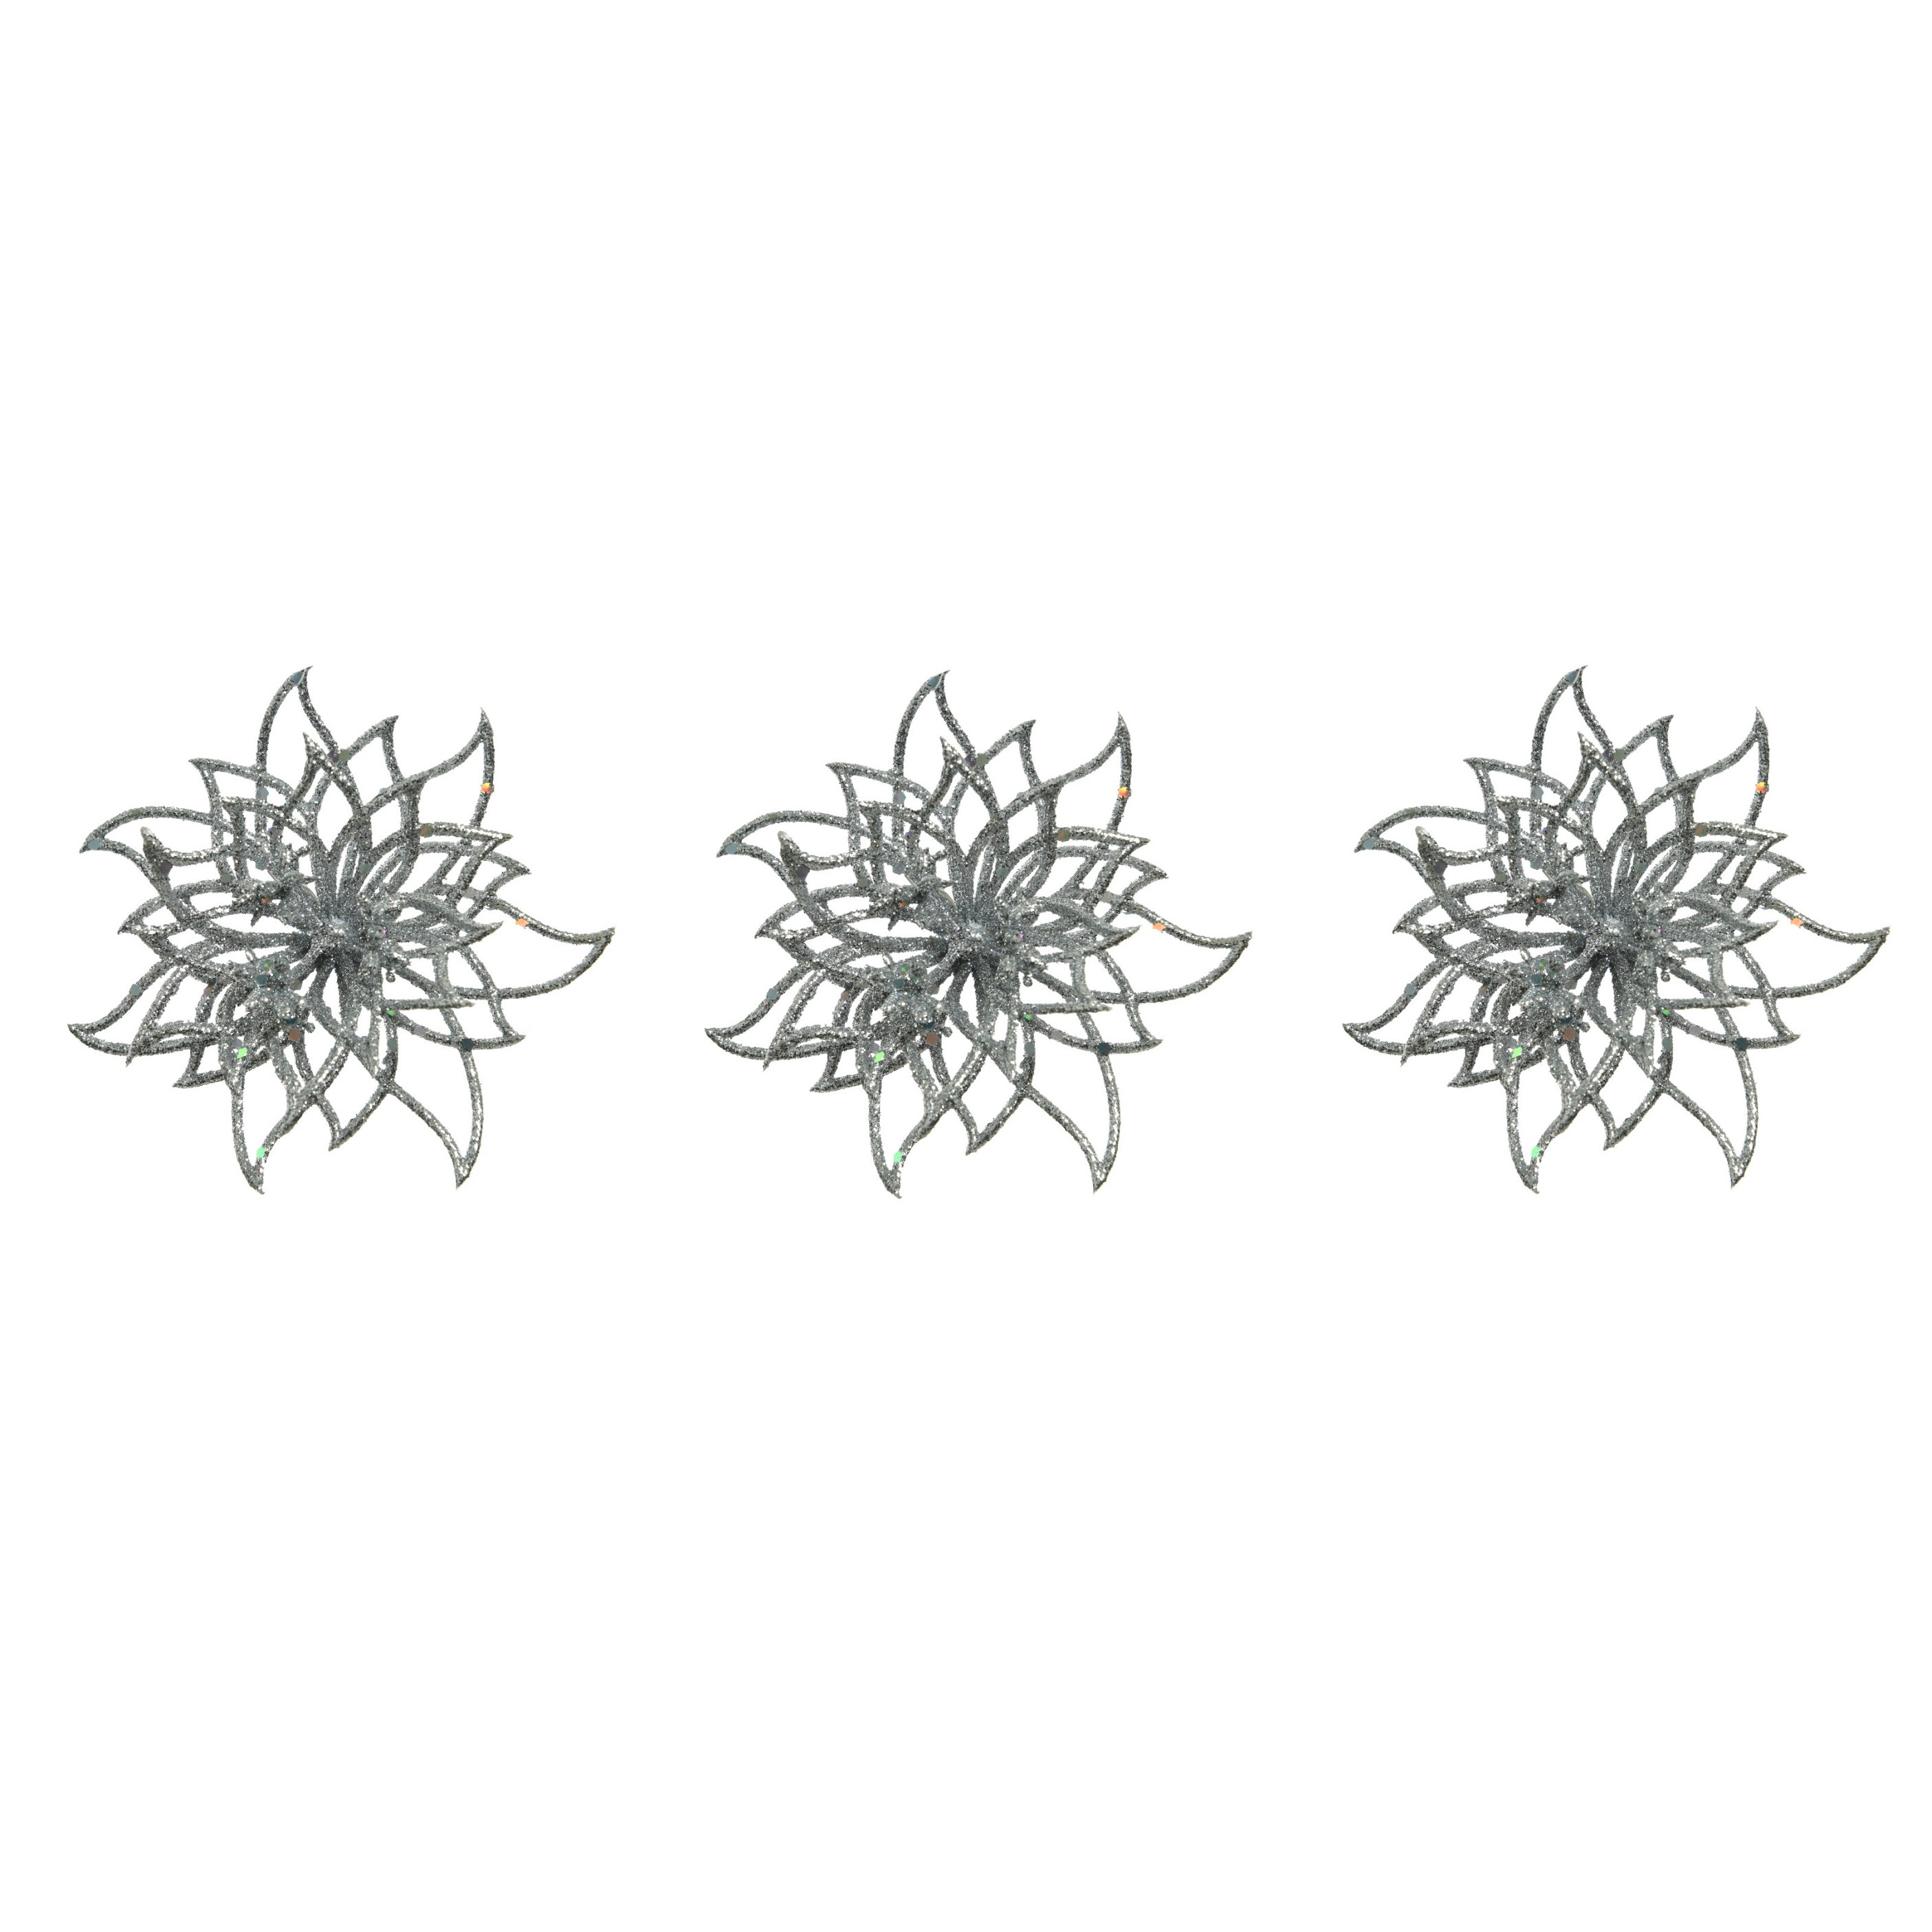 6x stuks decoratie bloemen kerstster zilver glitter op clip 14 cm